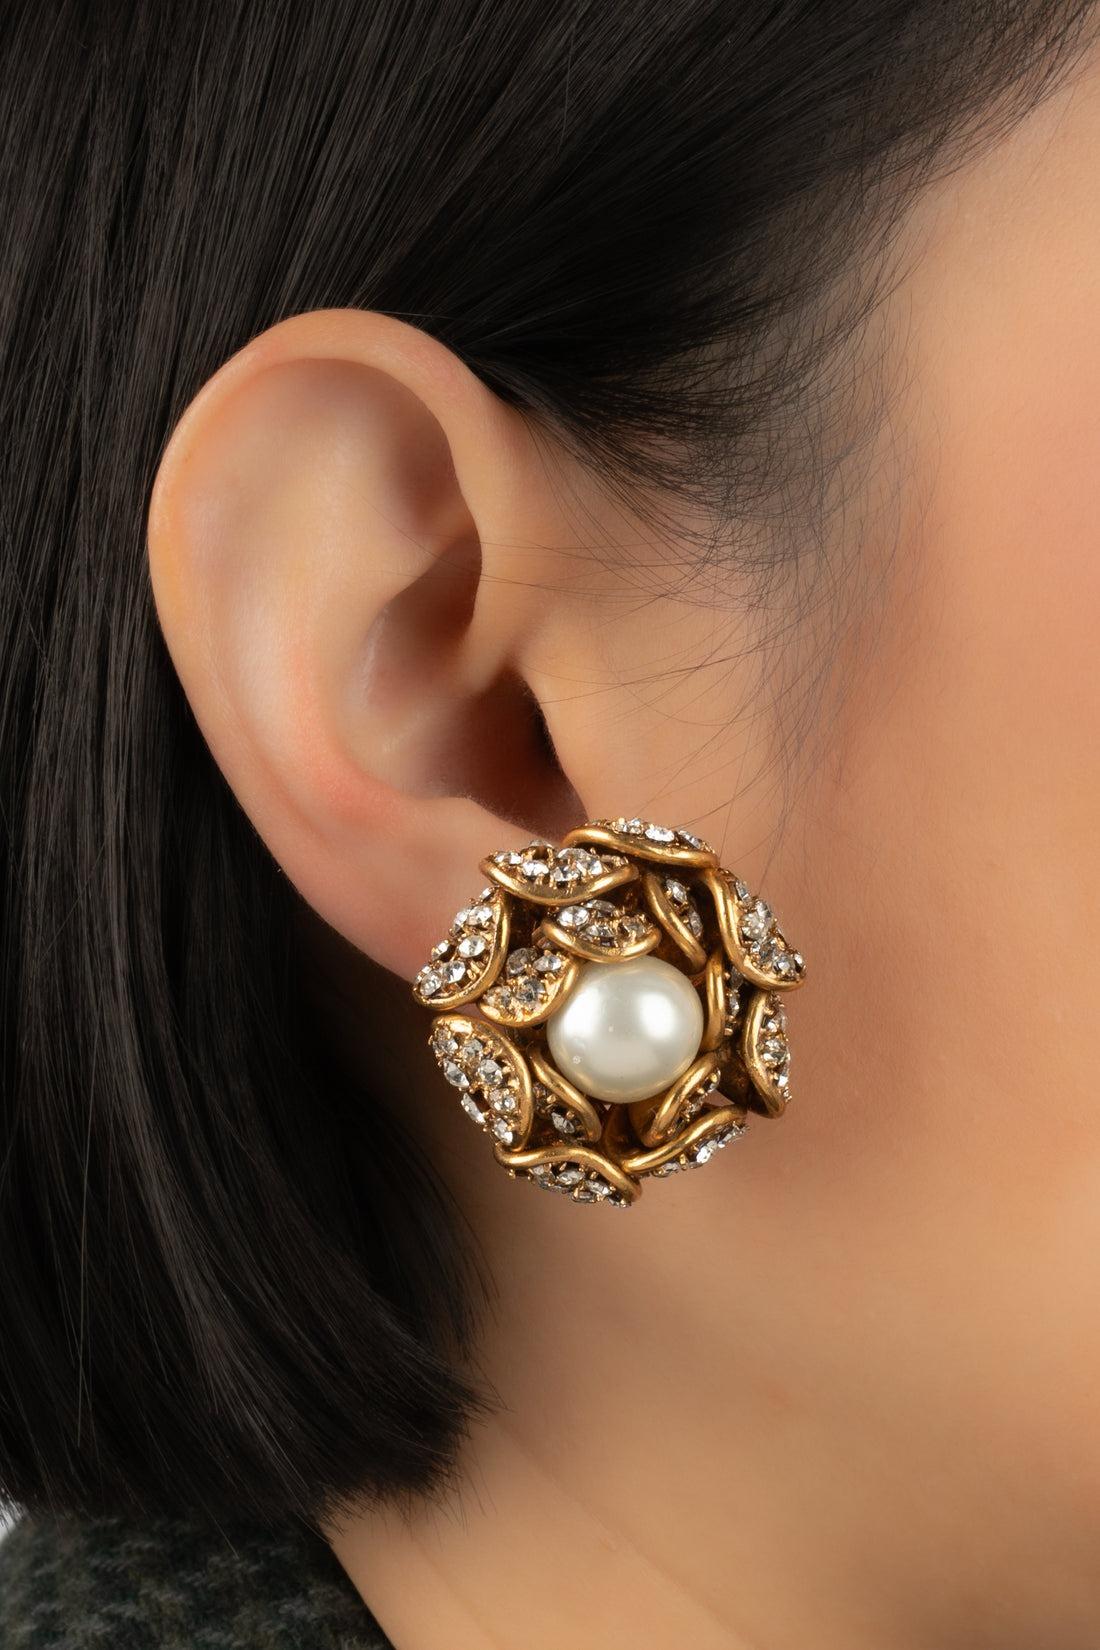 Chanel - (Made in France) Goldene Ohrringe aus Metall, verziert mit Strasssteinen und einem zentralen Perlencabochon.

Zusätzliche Informationen:
Zustand: Sehr guter Zustand
Abmessungen: Höhe: 4 cm

Sellers Referenz: BOB203